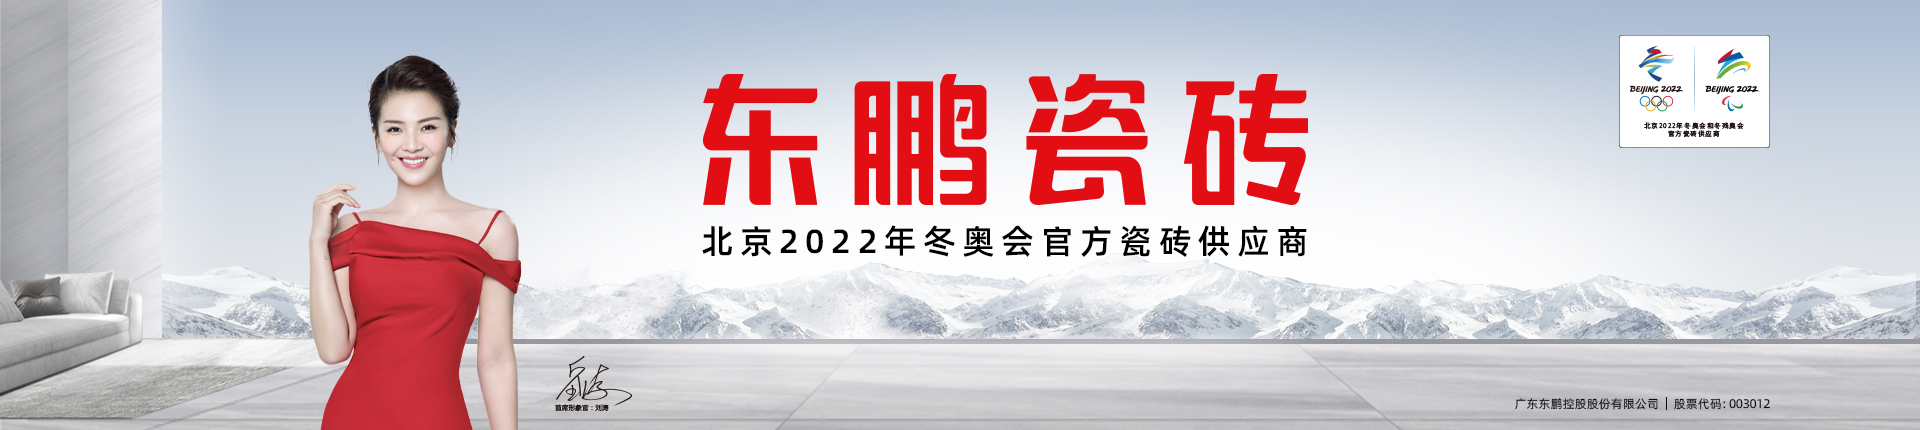 东鹏正式成为北京冬奥会官方瓷砖供应商